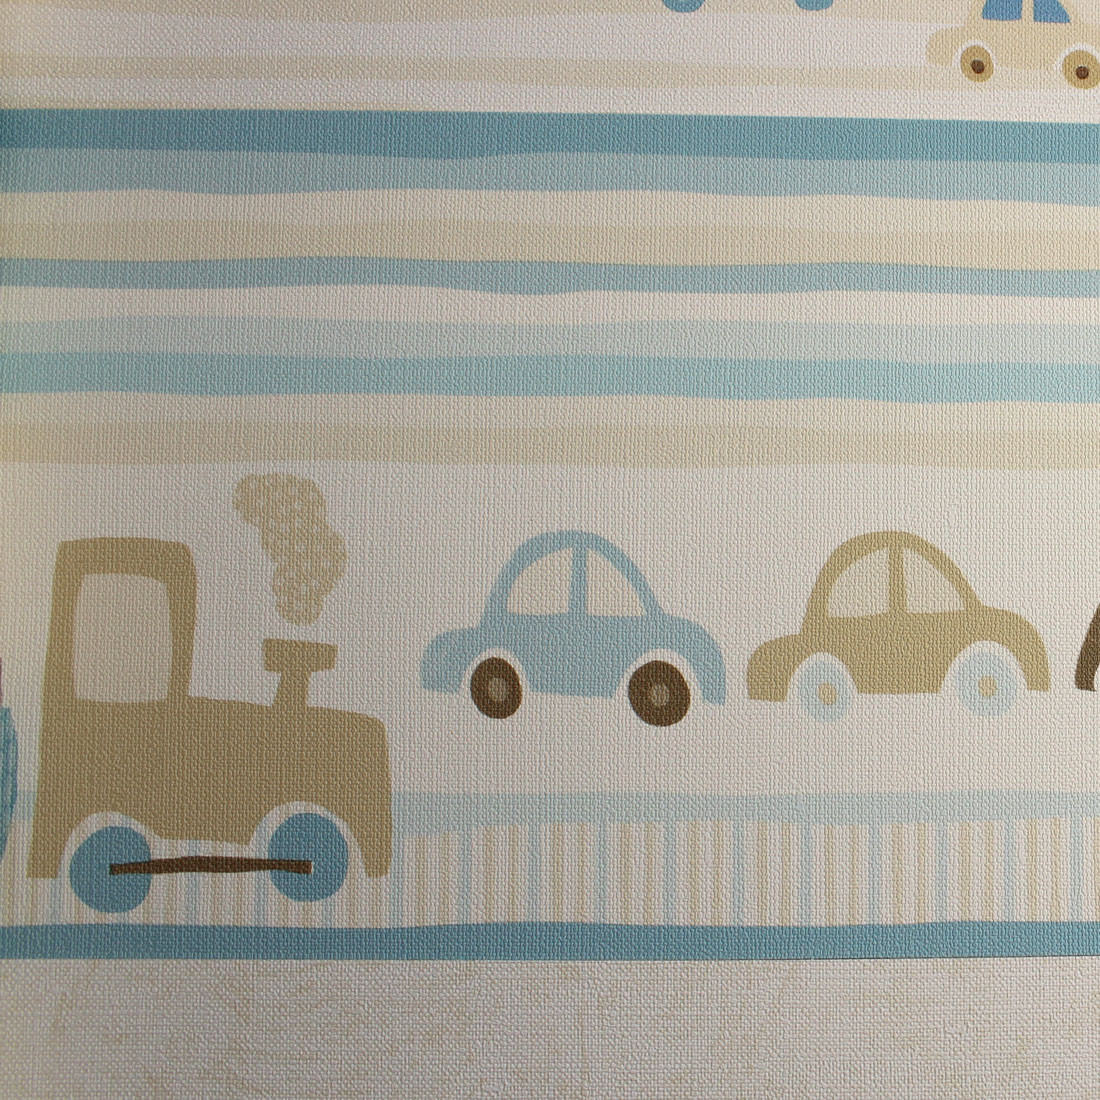 Faixa Decorativa Infantil Trenzinho e Carros - Azul - Nido